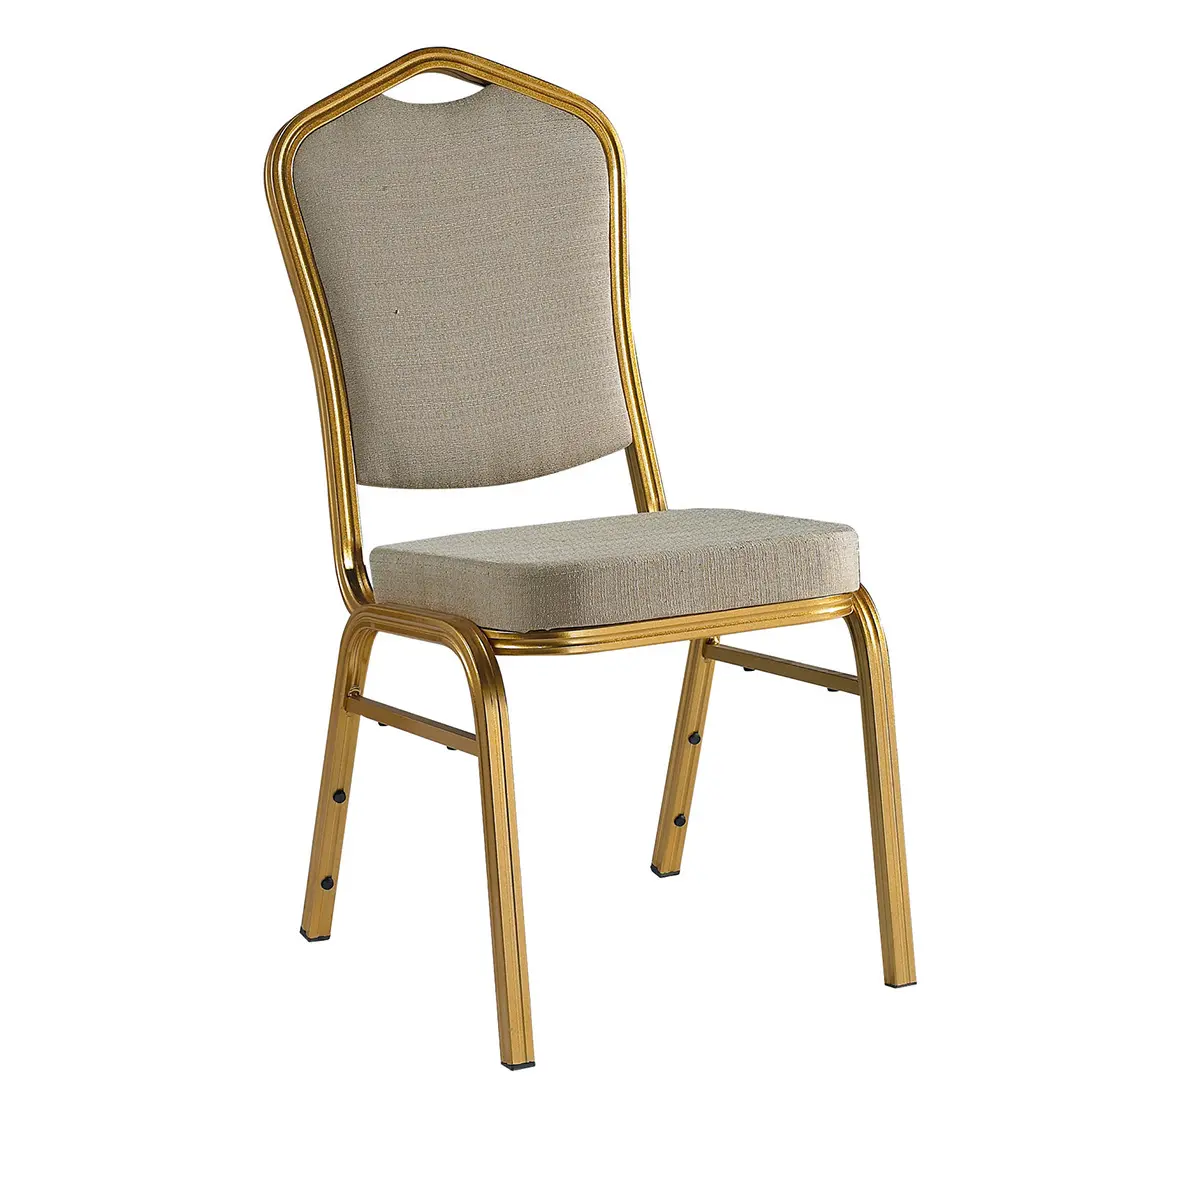 الجملة تكويم رخيصة الثمن الصلب المعدنية أثاث الفندق حفل زفاف الذهب تستخدم كرسي مأدبة للبيع